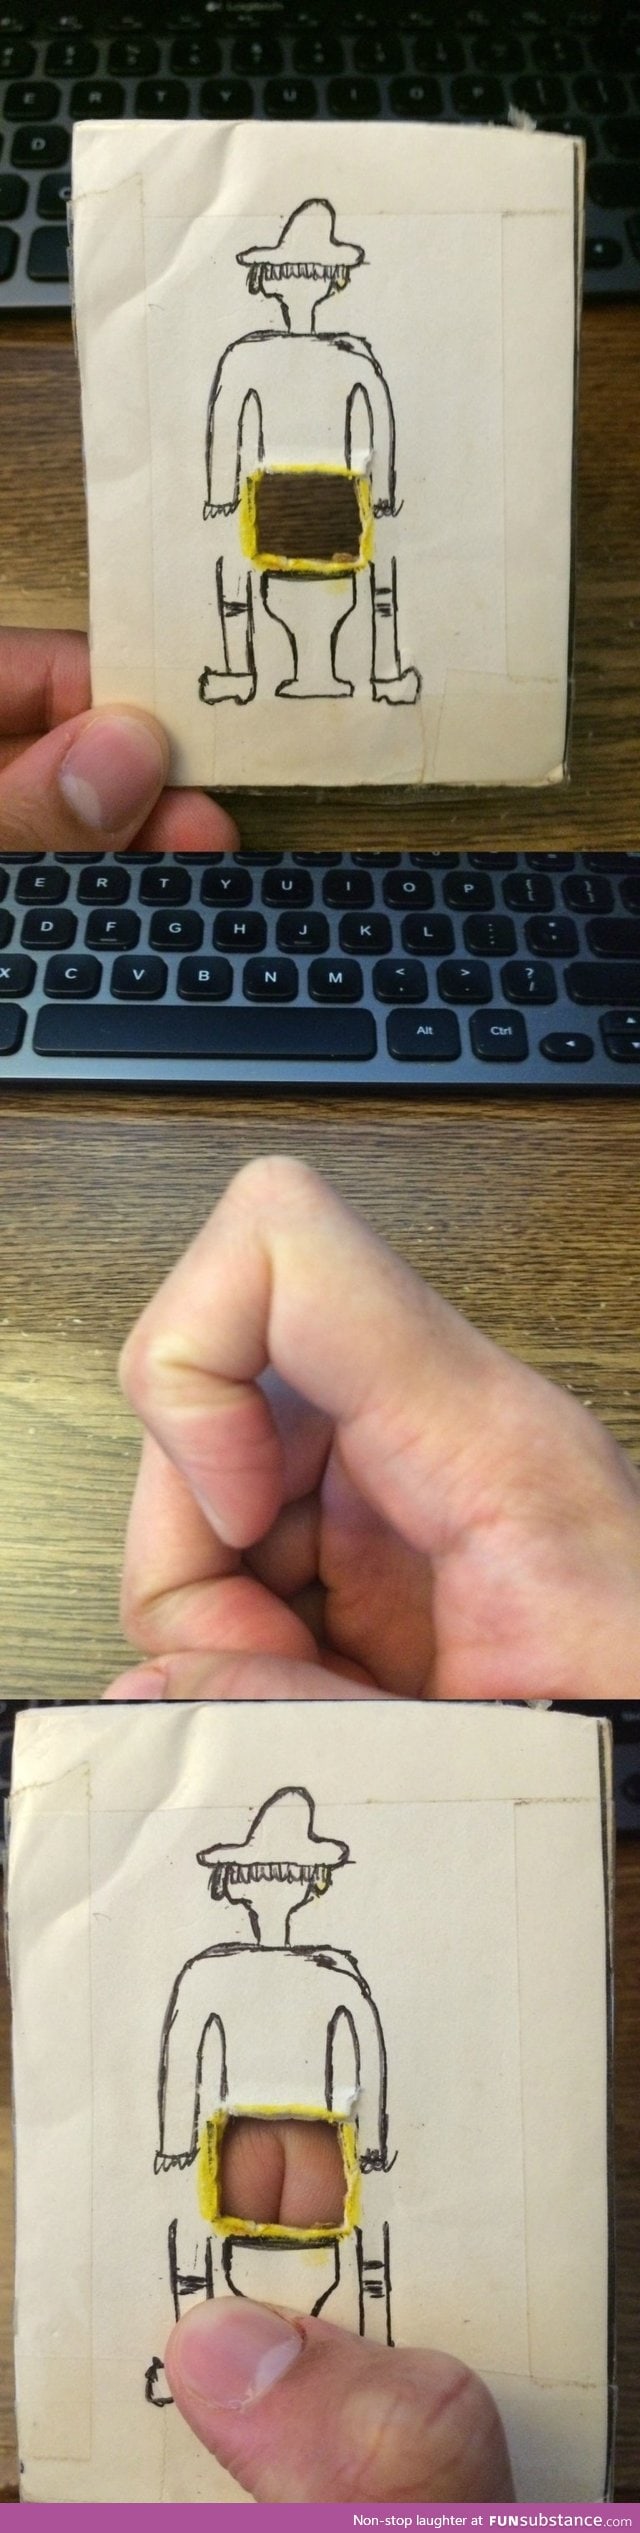 Finger butt